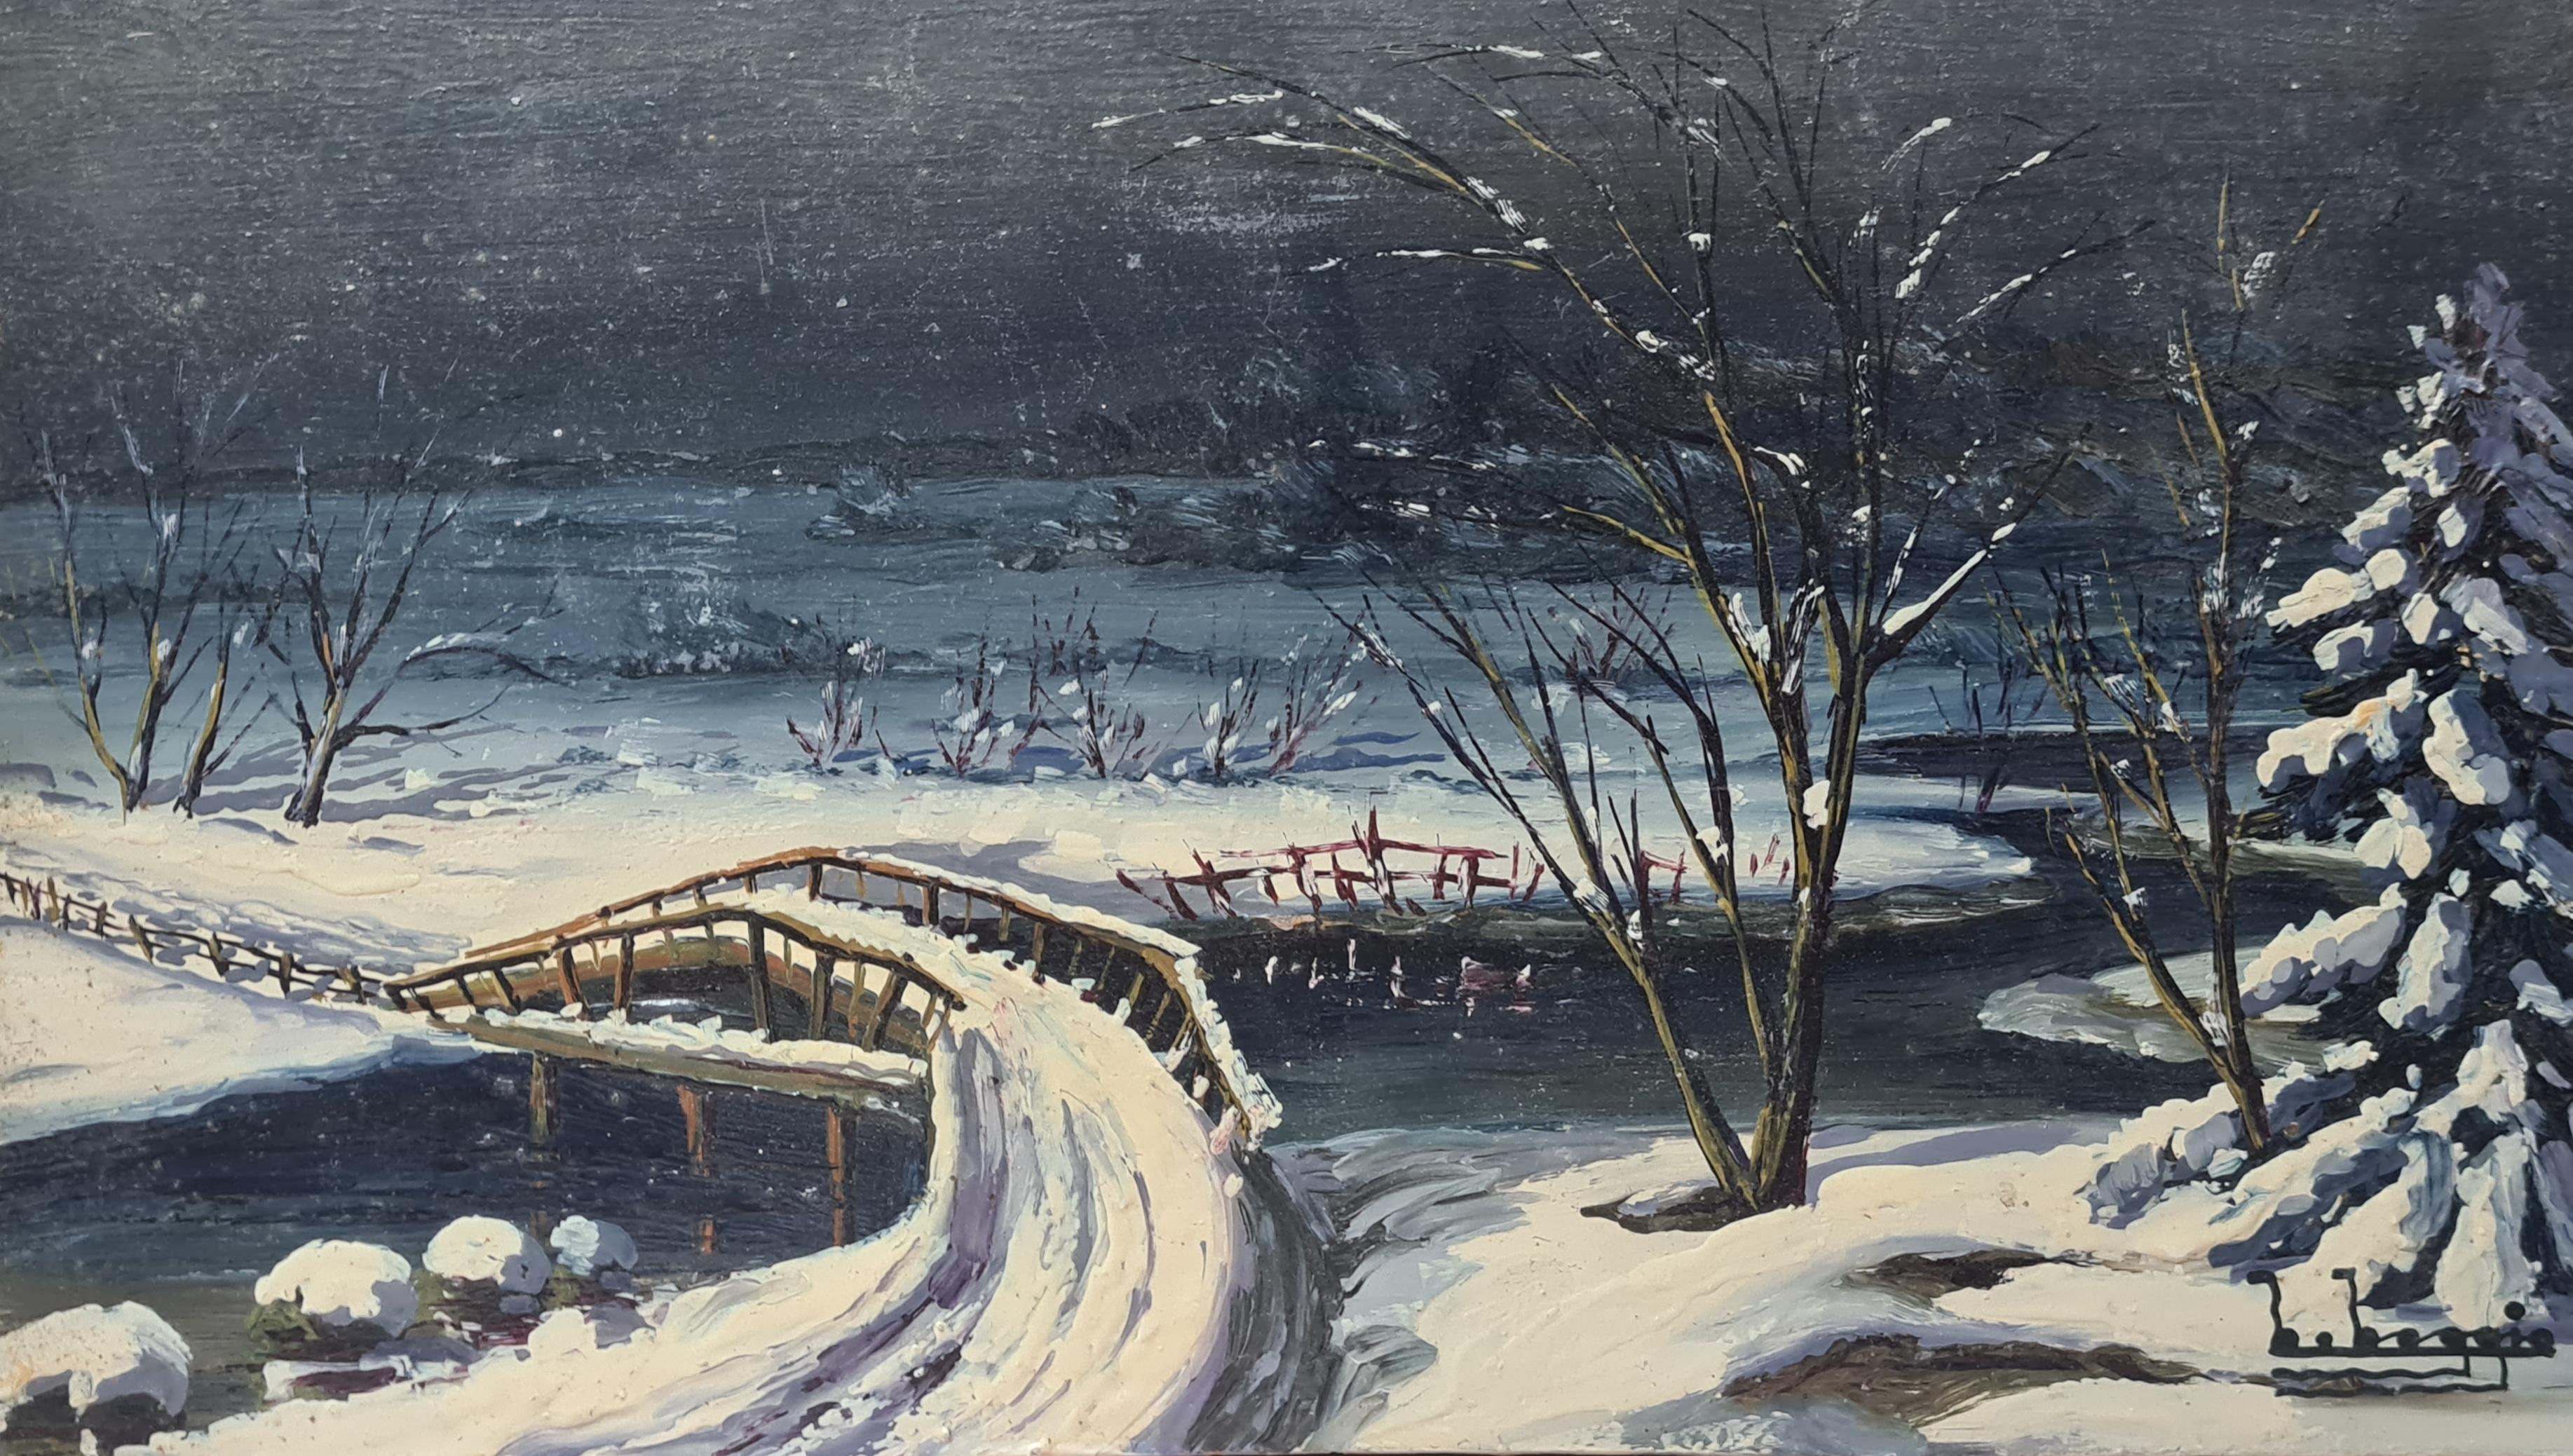 Boggio Landscape Painting - A Christmas Winter Wonderland, Barbizon School Snowscape.